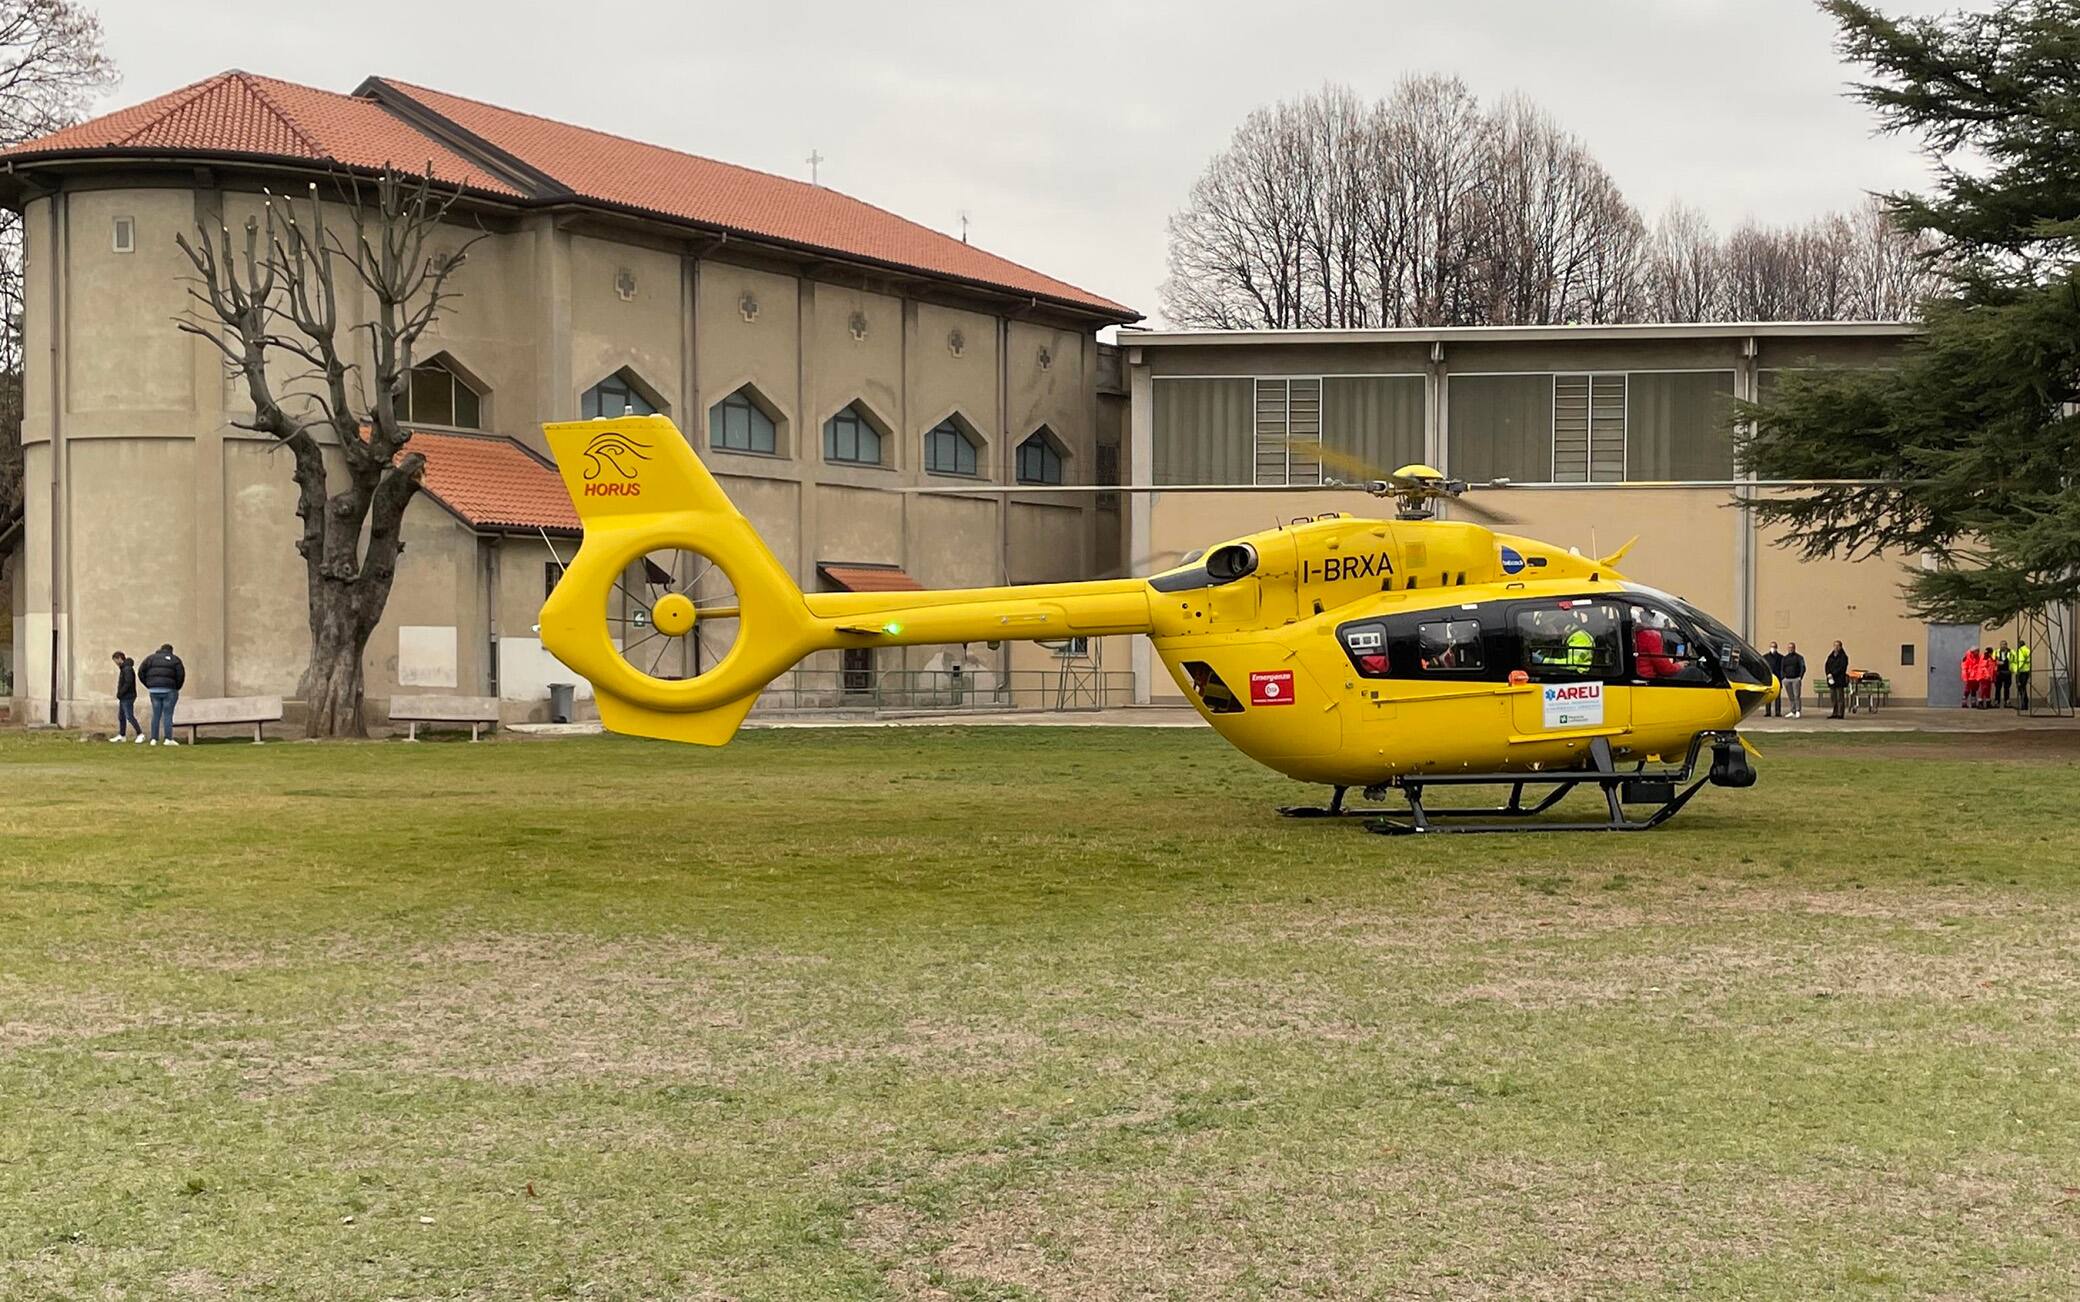 Un dodicenne è stato trasportato in ospedale in gravi condizioni dopo essere caduto da un'altezza di 4 metri a scuola stamani a Saronno, nel Varesotto, 13 dicembre 2022. ANSA/AGENZIA BLITZ VARESE